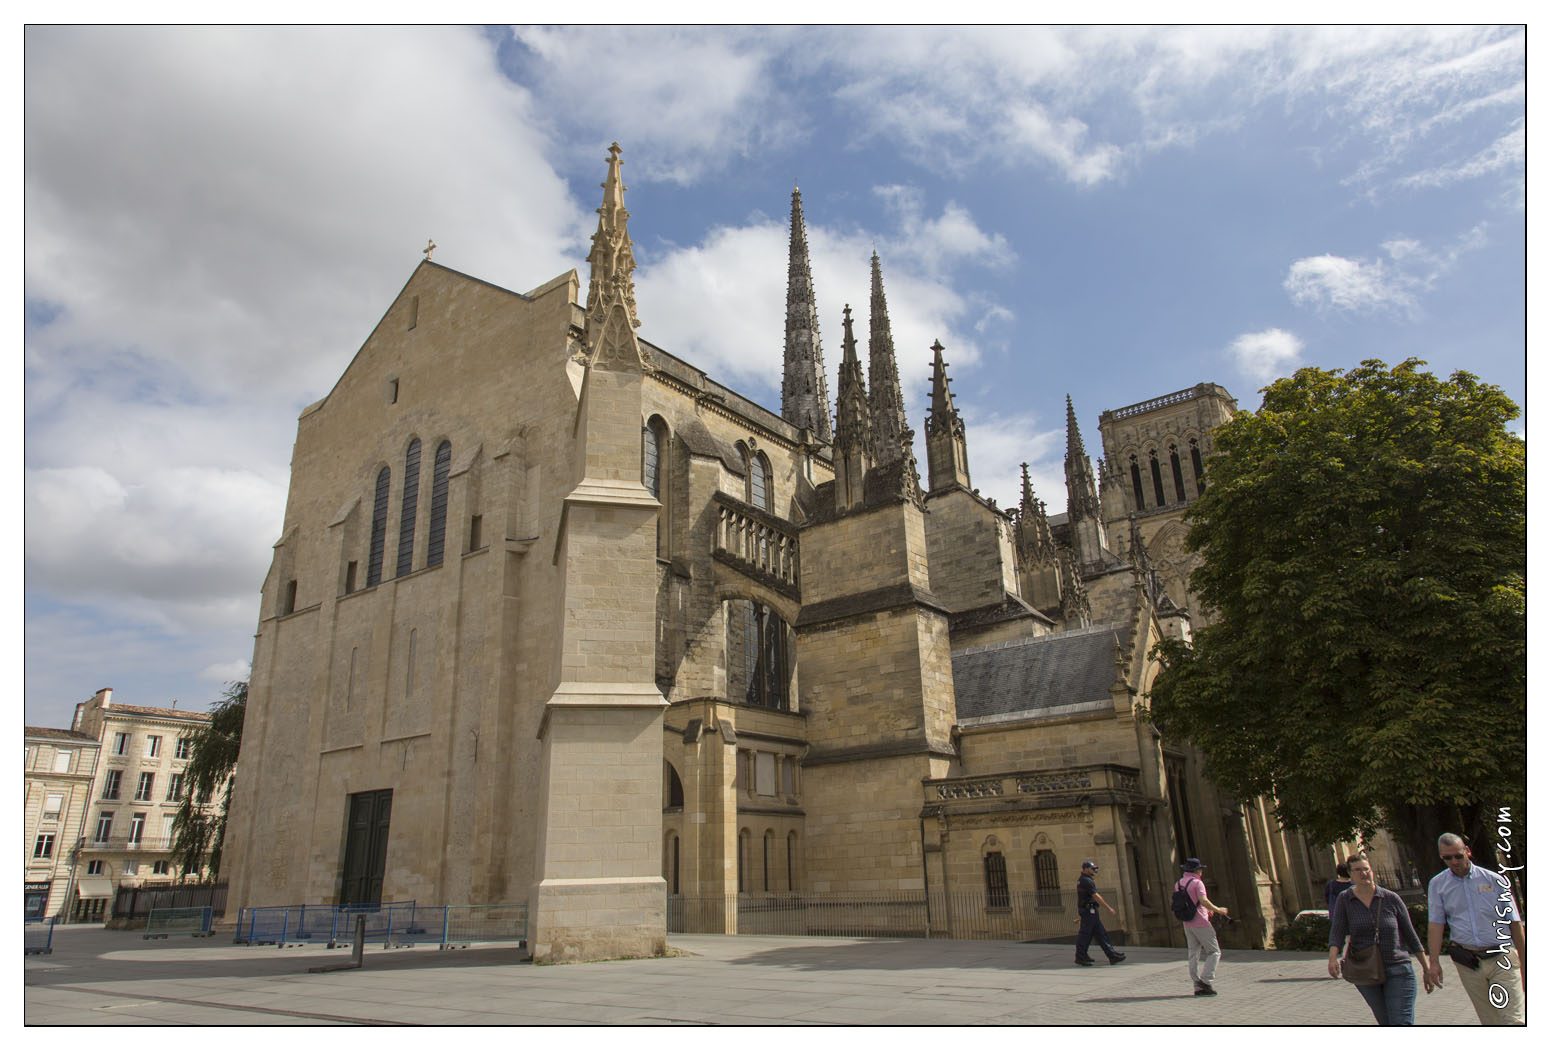 20140828-021_5704-Bordeaux_Cathedrale_Saint_Andre.jpg